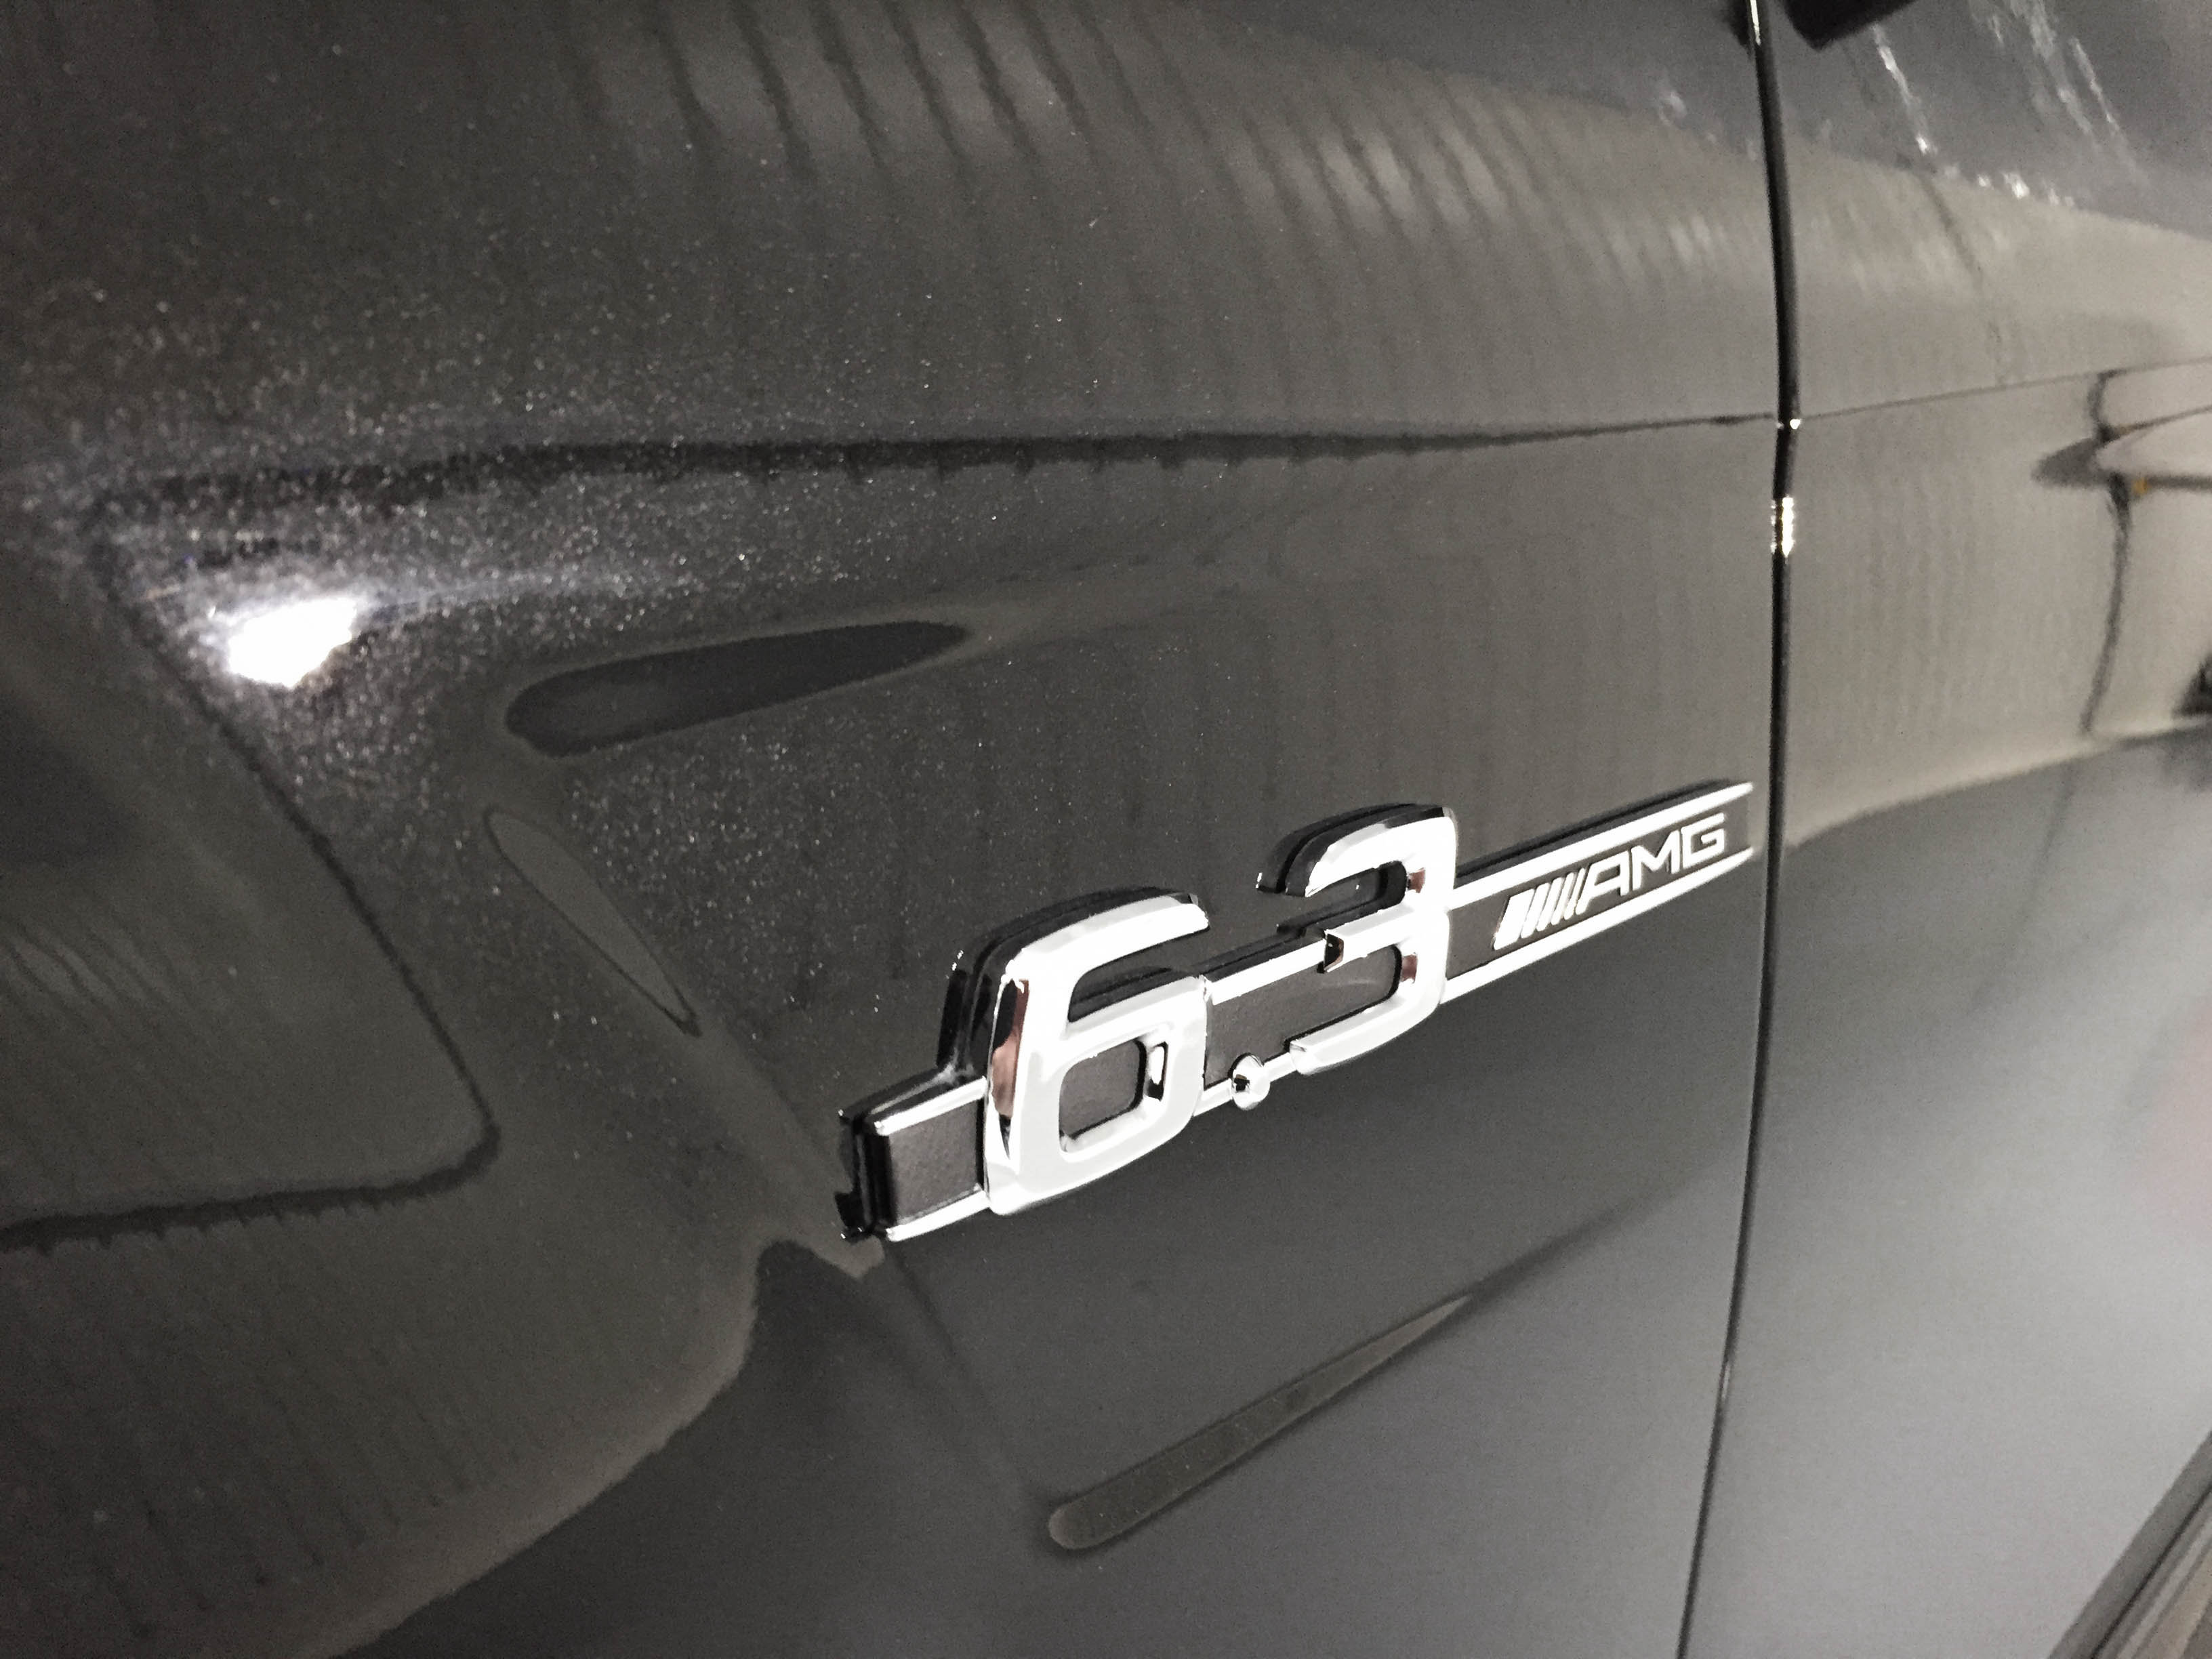 Mercedes C63 Touring – Badge